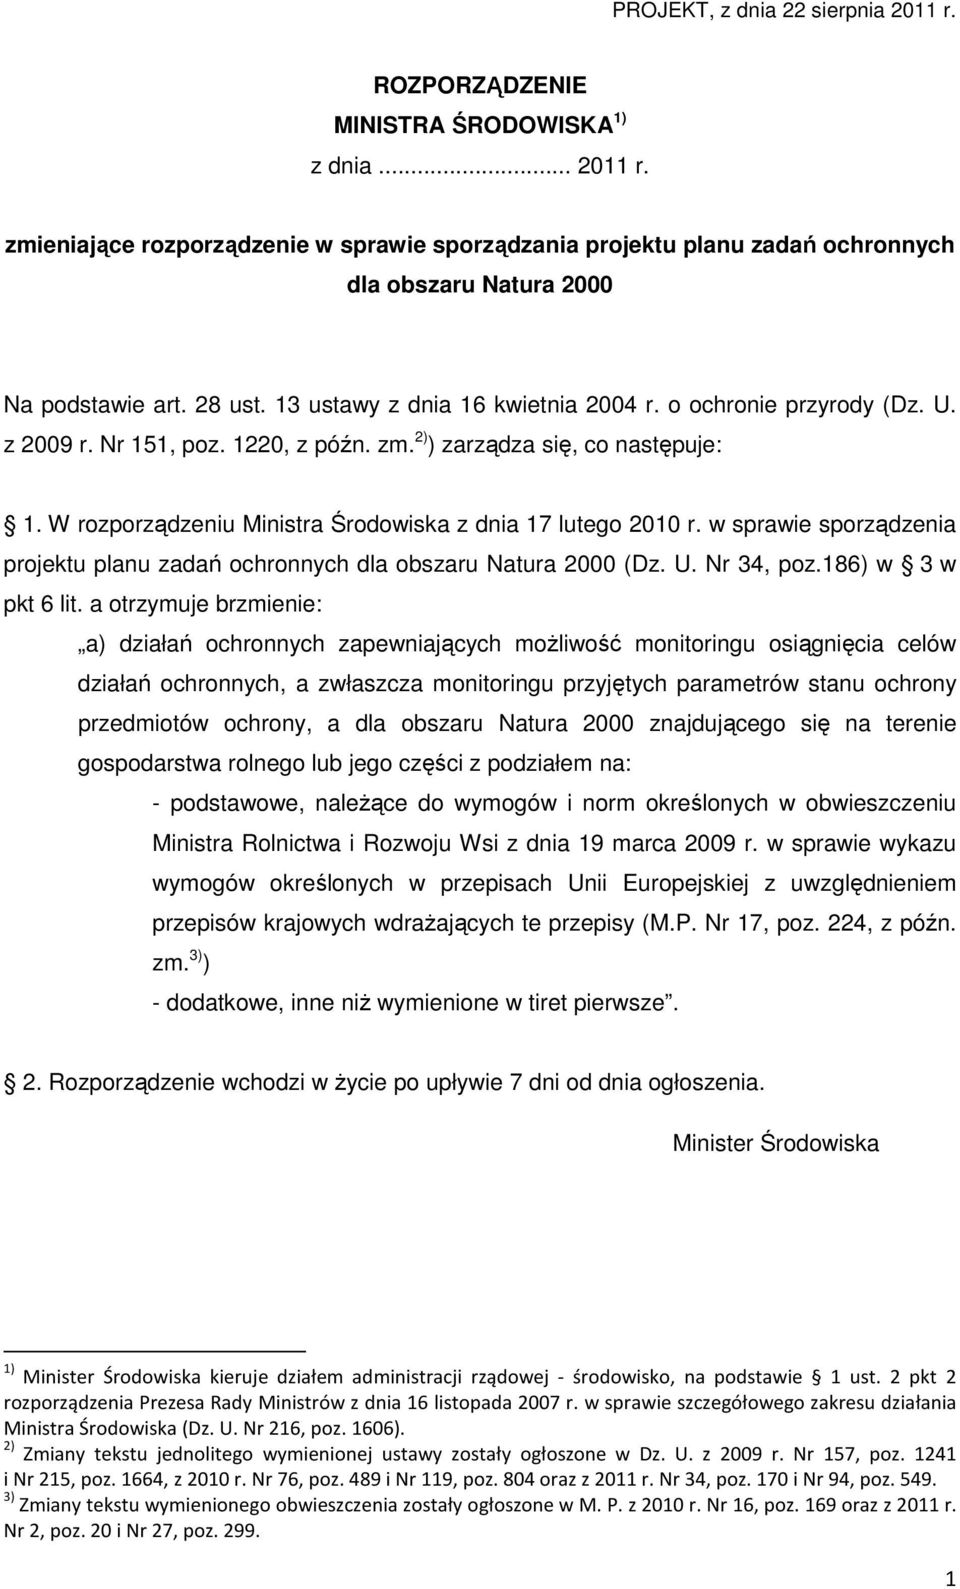 W rozporządzeniu Ministra Środowiska z dnia 17 lutego 2010 r. w sprawie sporządzenia projektu planu zadań ochronnych dla obszaru Natura 2000 (Dz. U. Nr 34, poz.186) w 3 w pkt 6 lit.